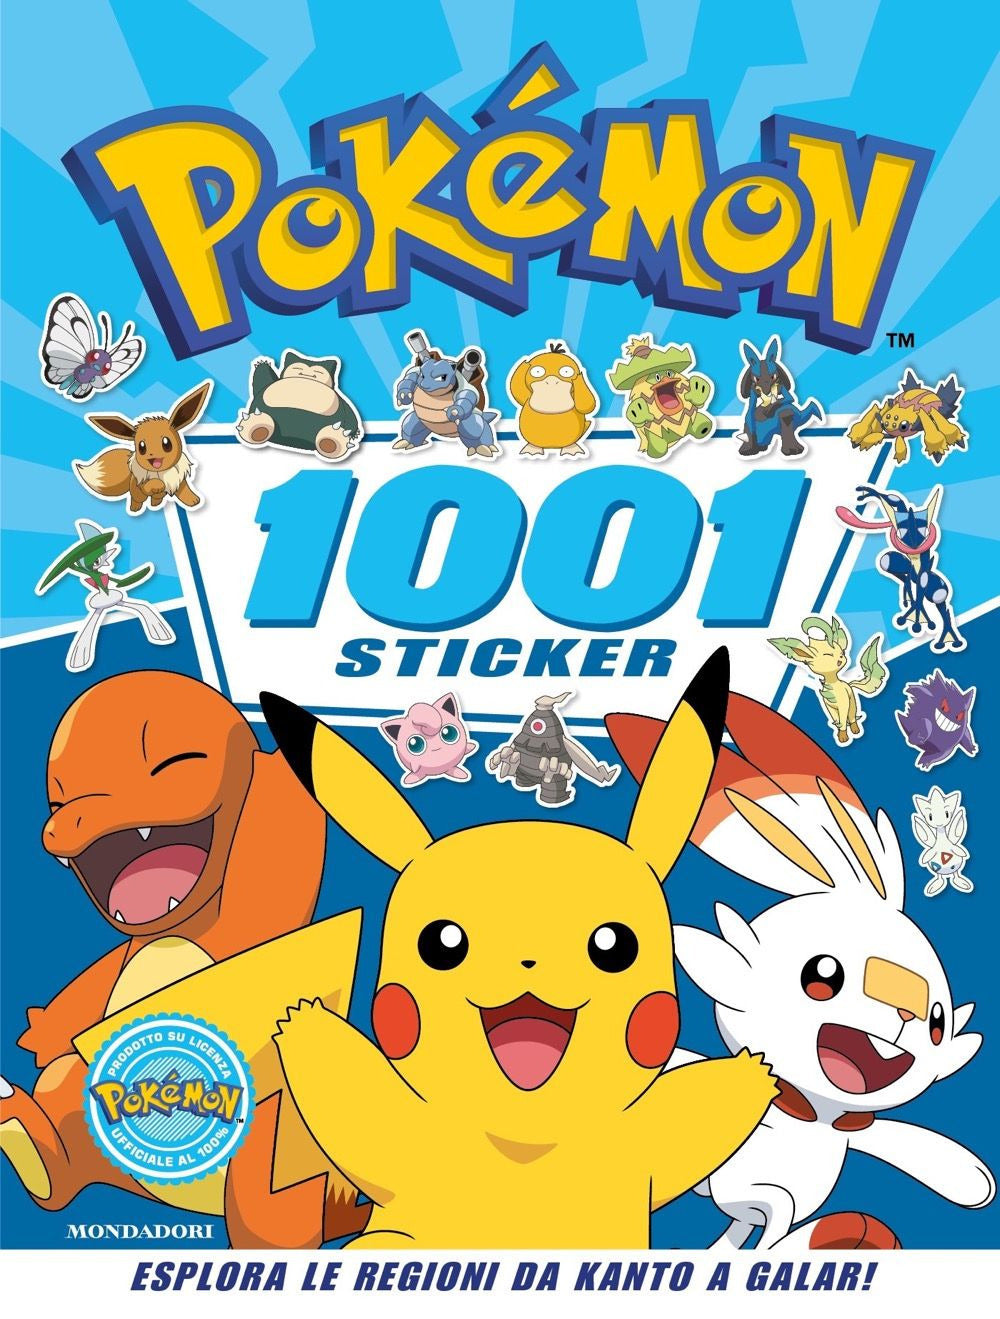 Pokémon. 1001 sticker